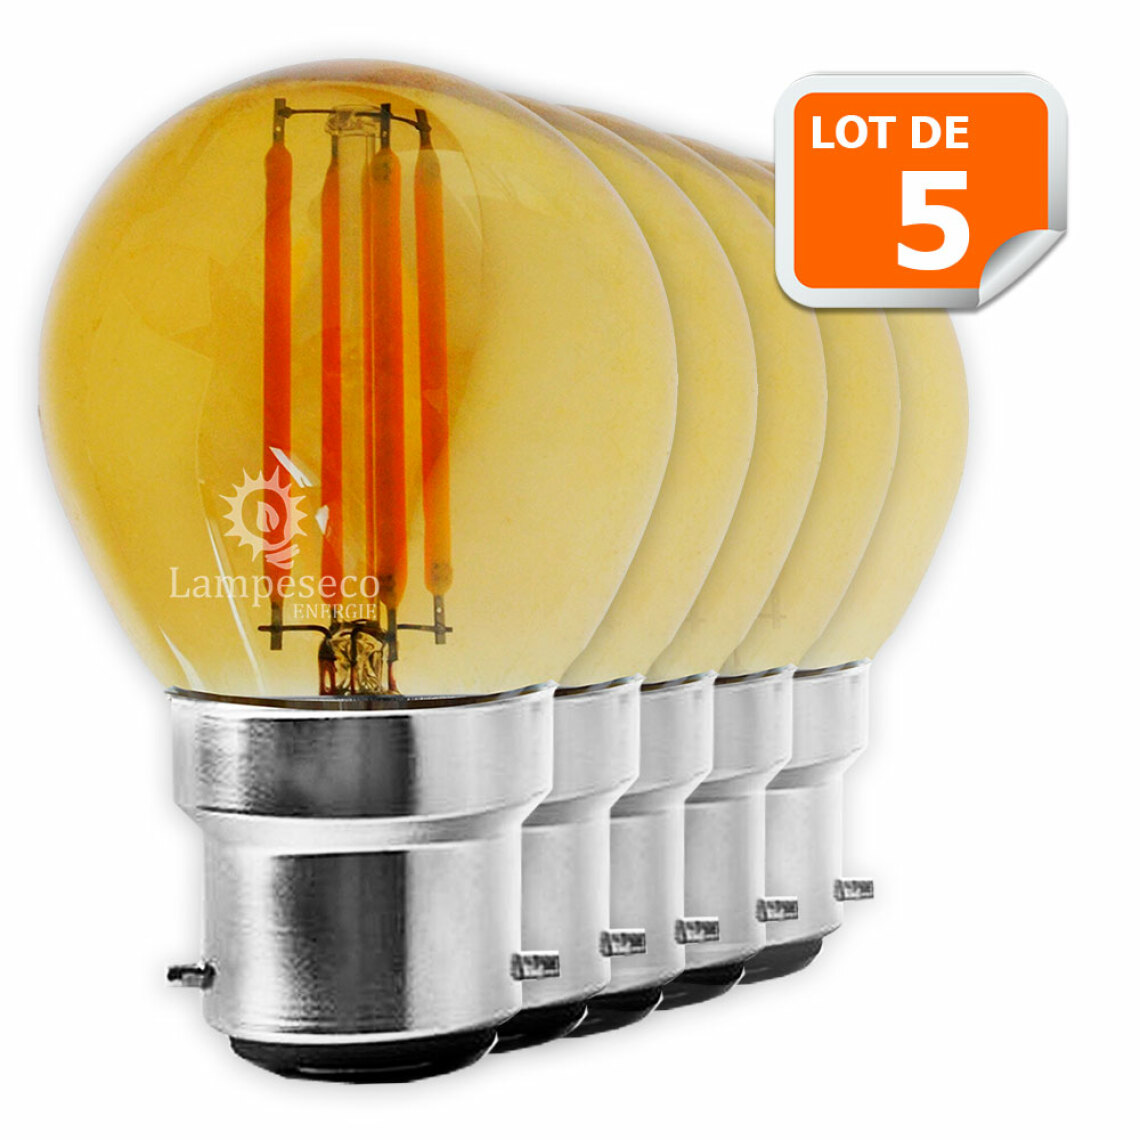 Lampesecoenergie - Lot de 5 Ampoules Led Filament Culot B22 forme G45 4 Watt (éq 42 watts) - Ampoules LED